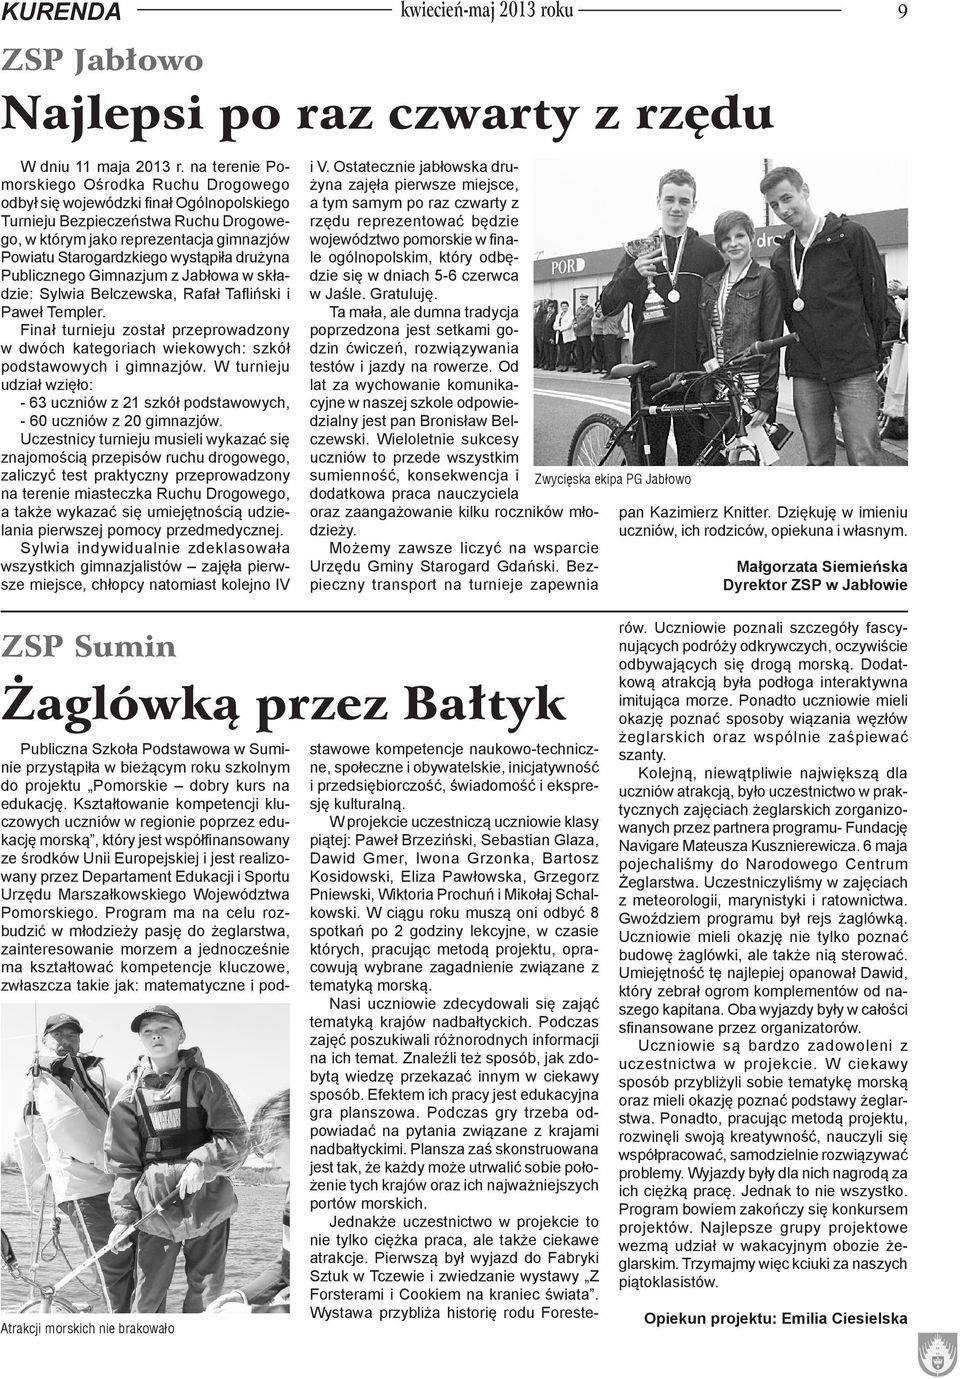 wystąpiła drużyna Publicznego Gimnazjum z Jabłowa w składzie: Sylwia Belczewska, Rafał Tafliński i Paweł Templer.